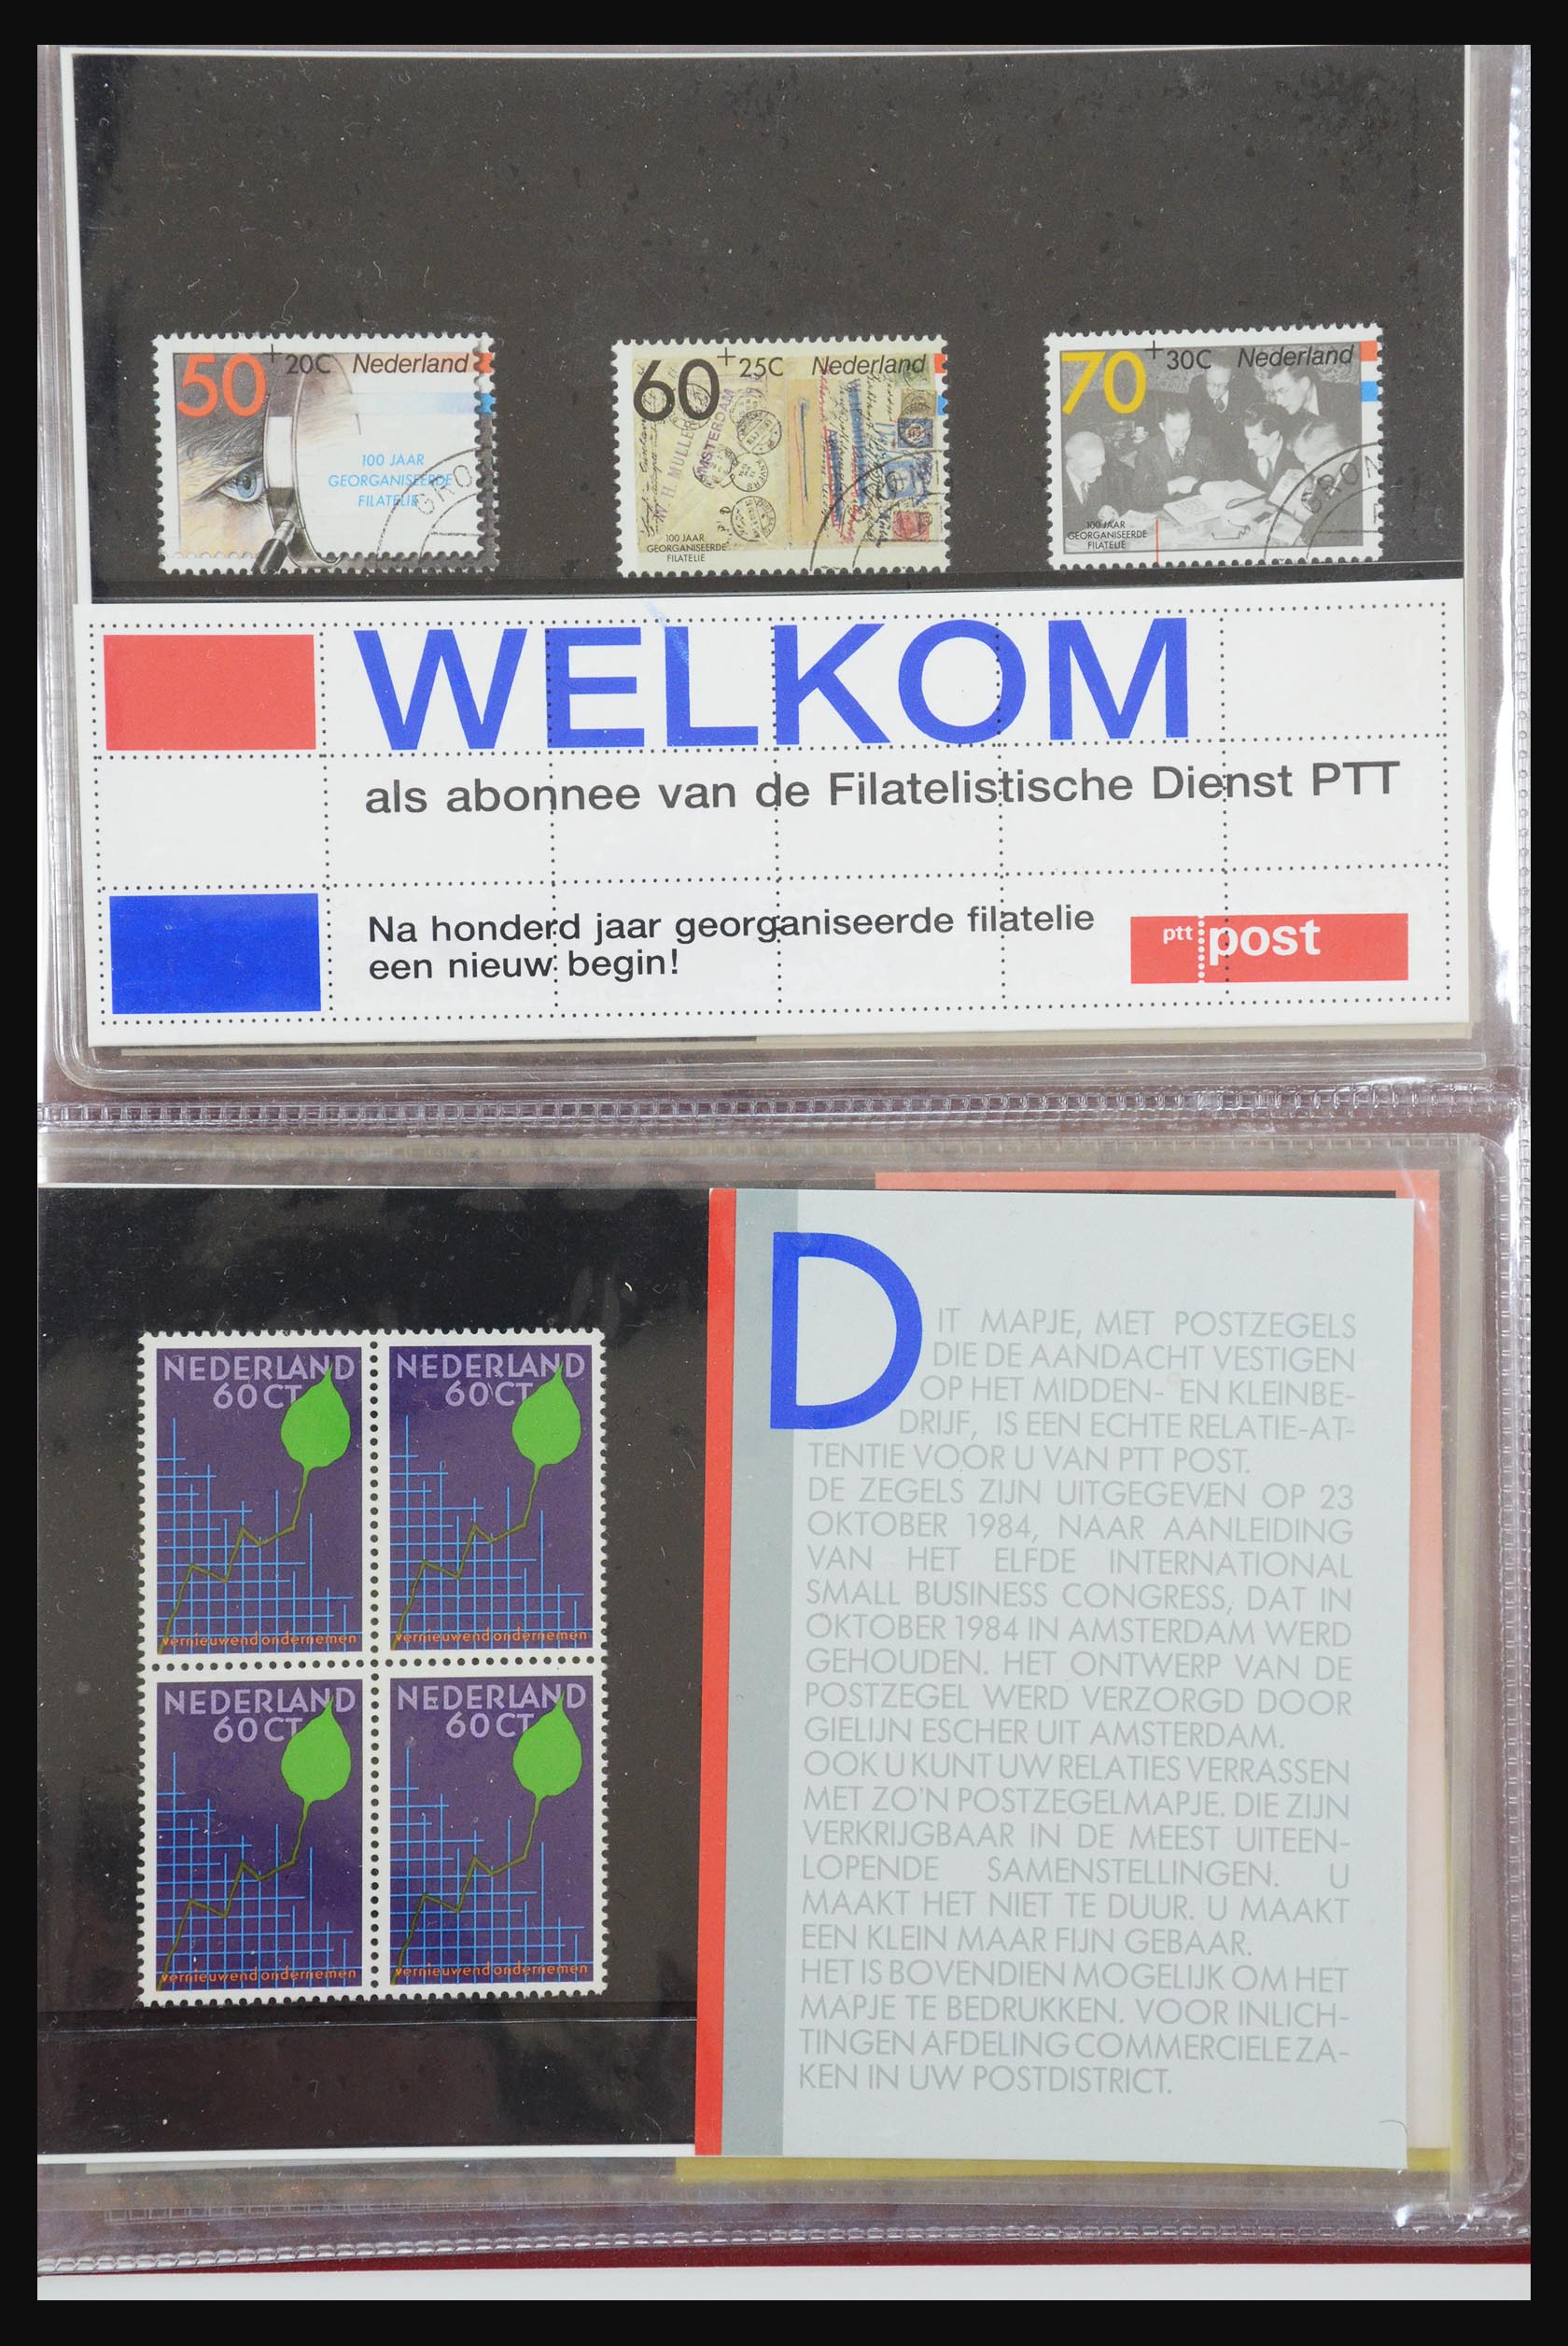 31495 049 - 31495 Netherlands special presentation packs.